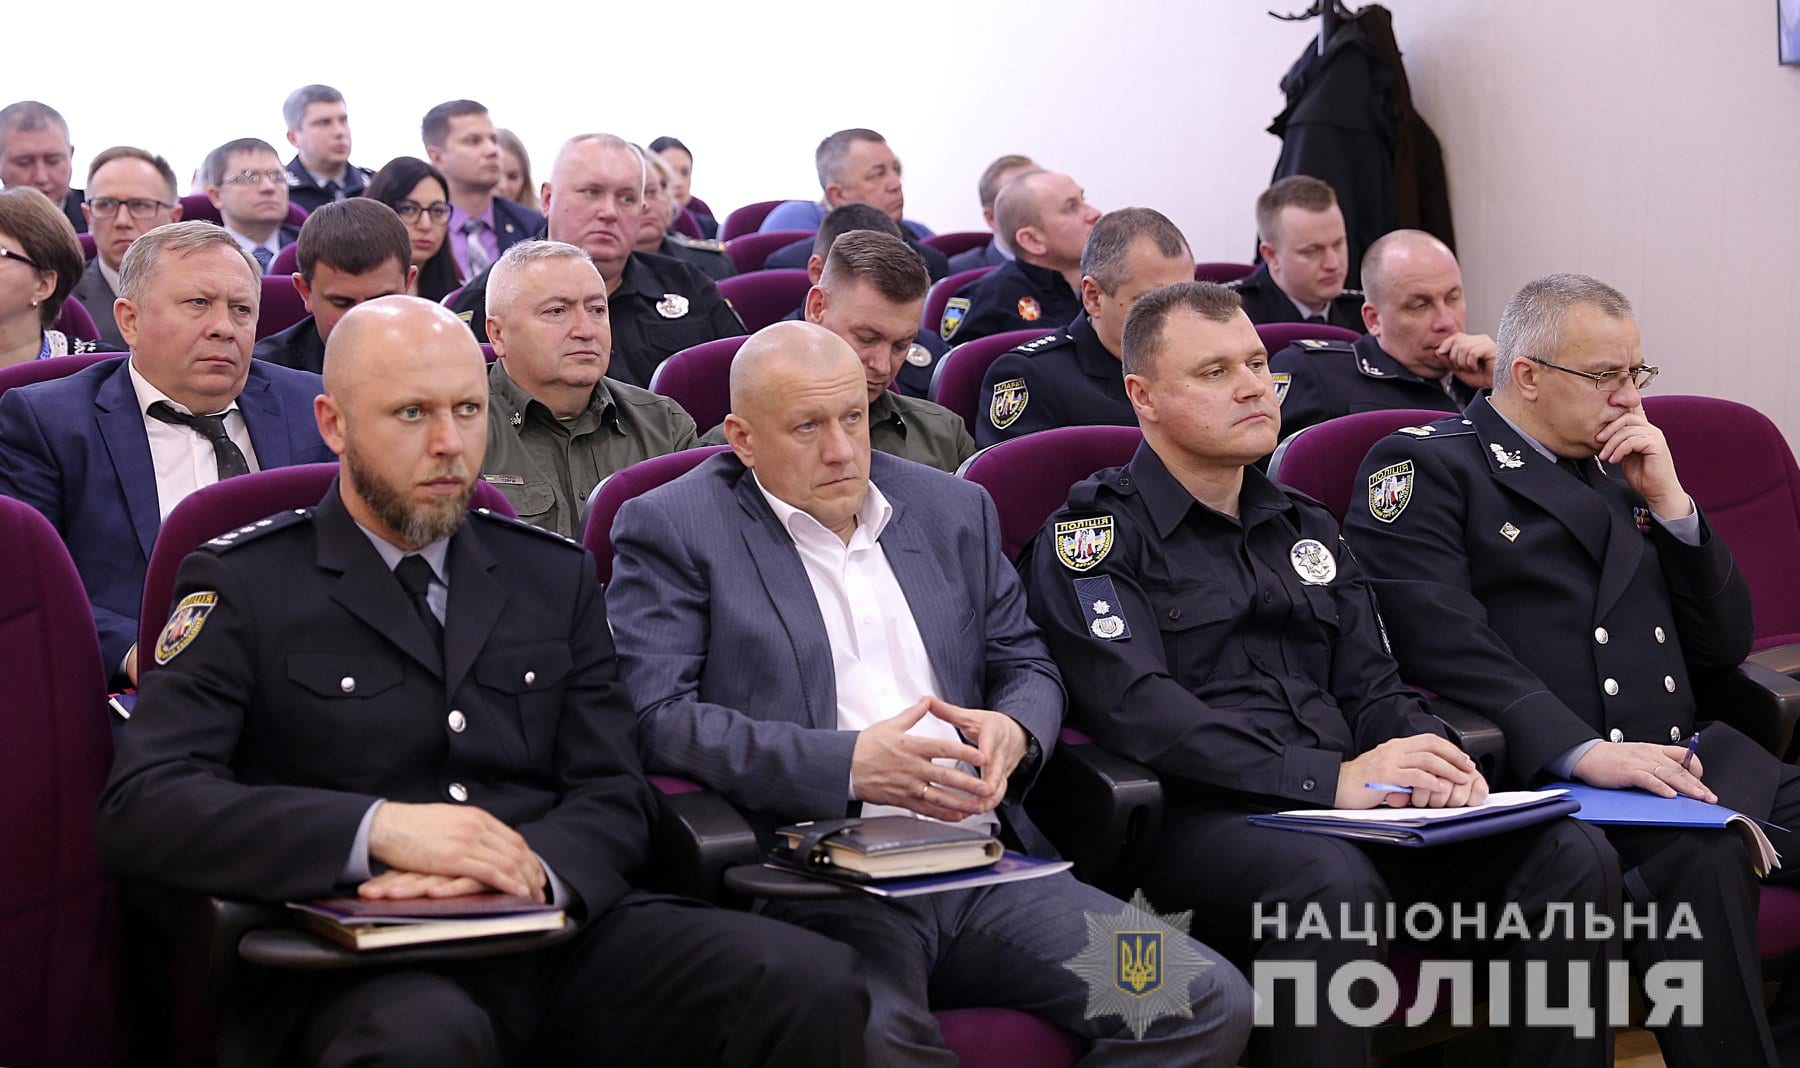 Второй тур президентских выборов в Украине: в полиции развернули подготовку. Новости Днепра